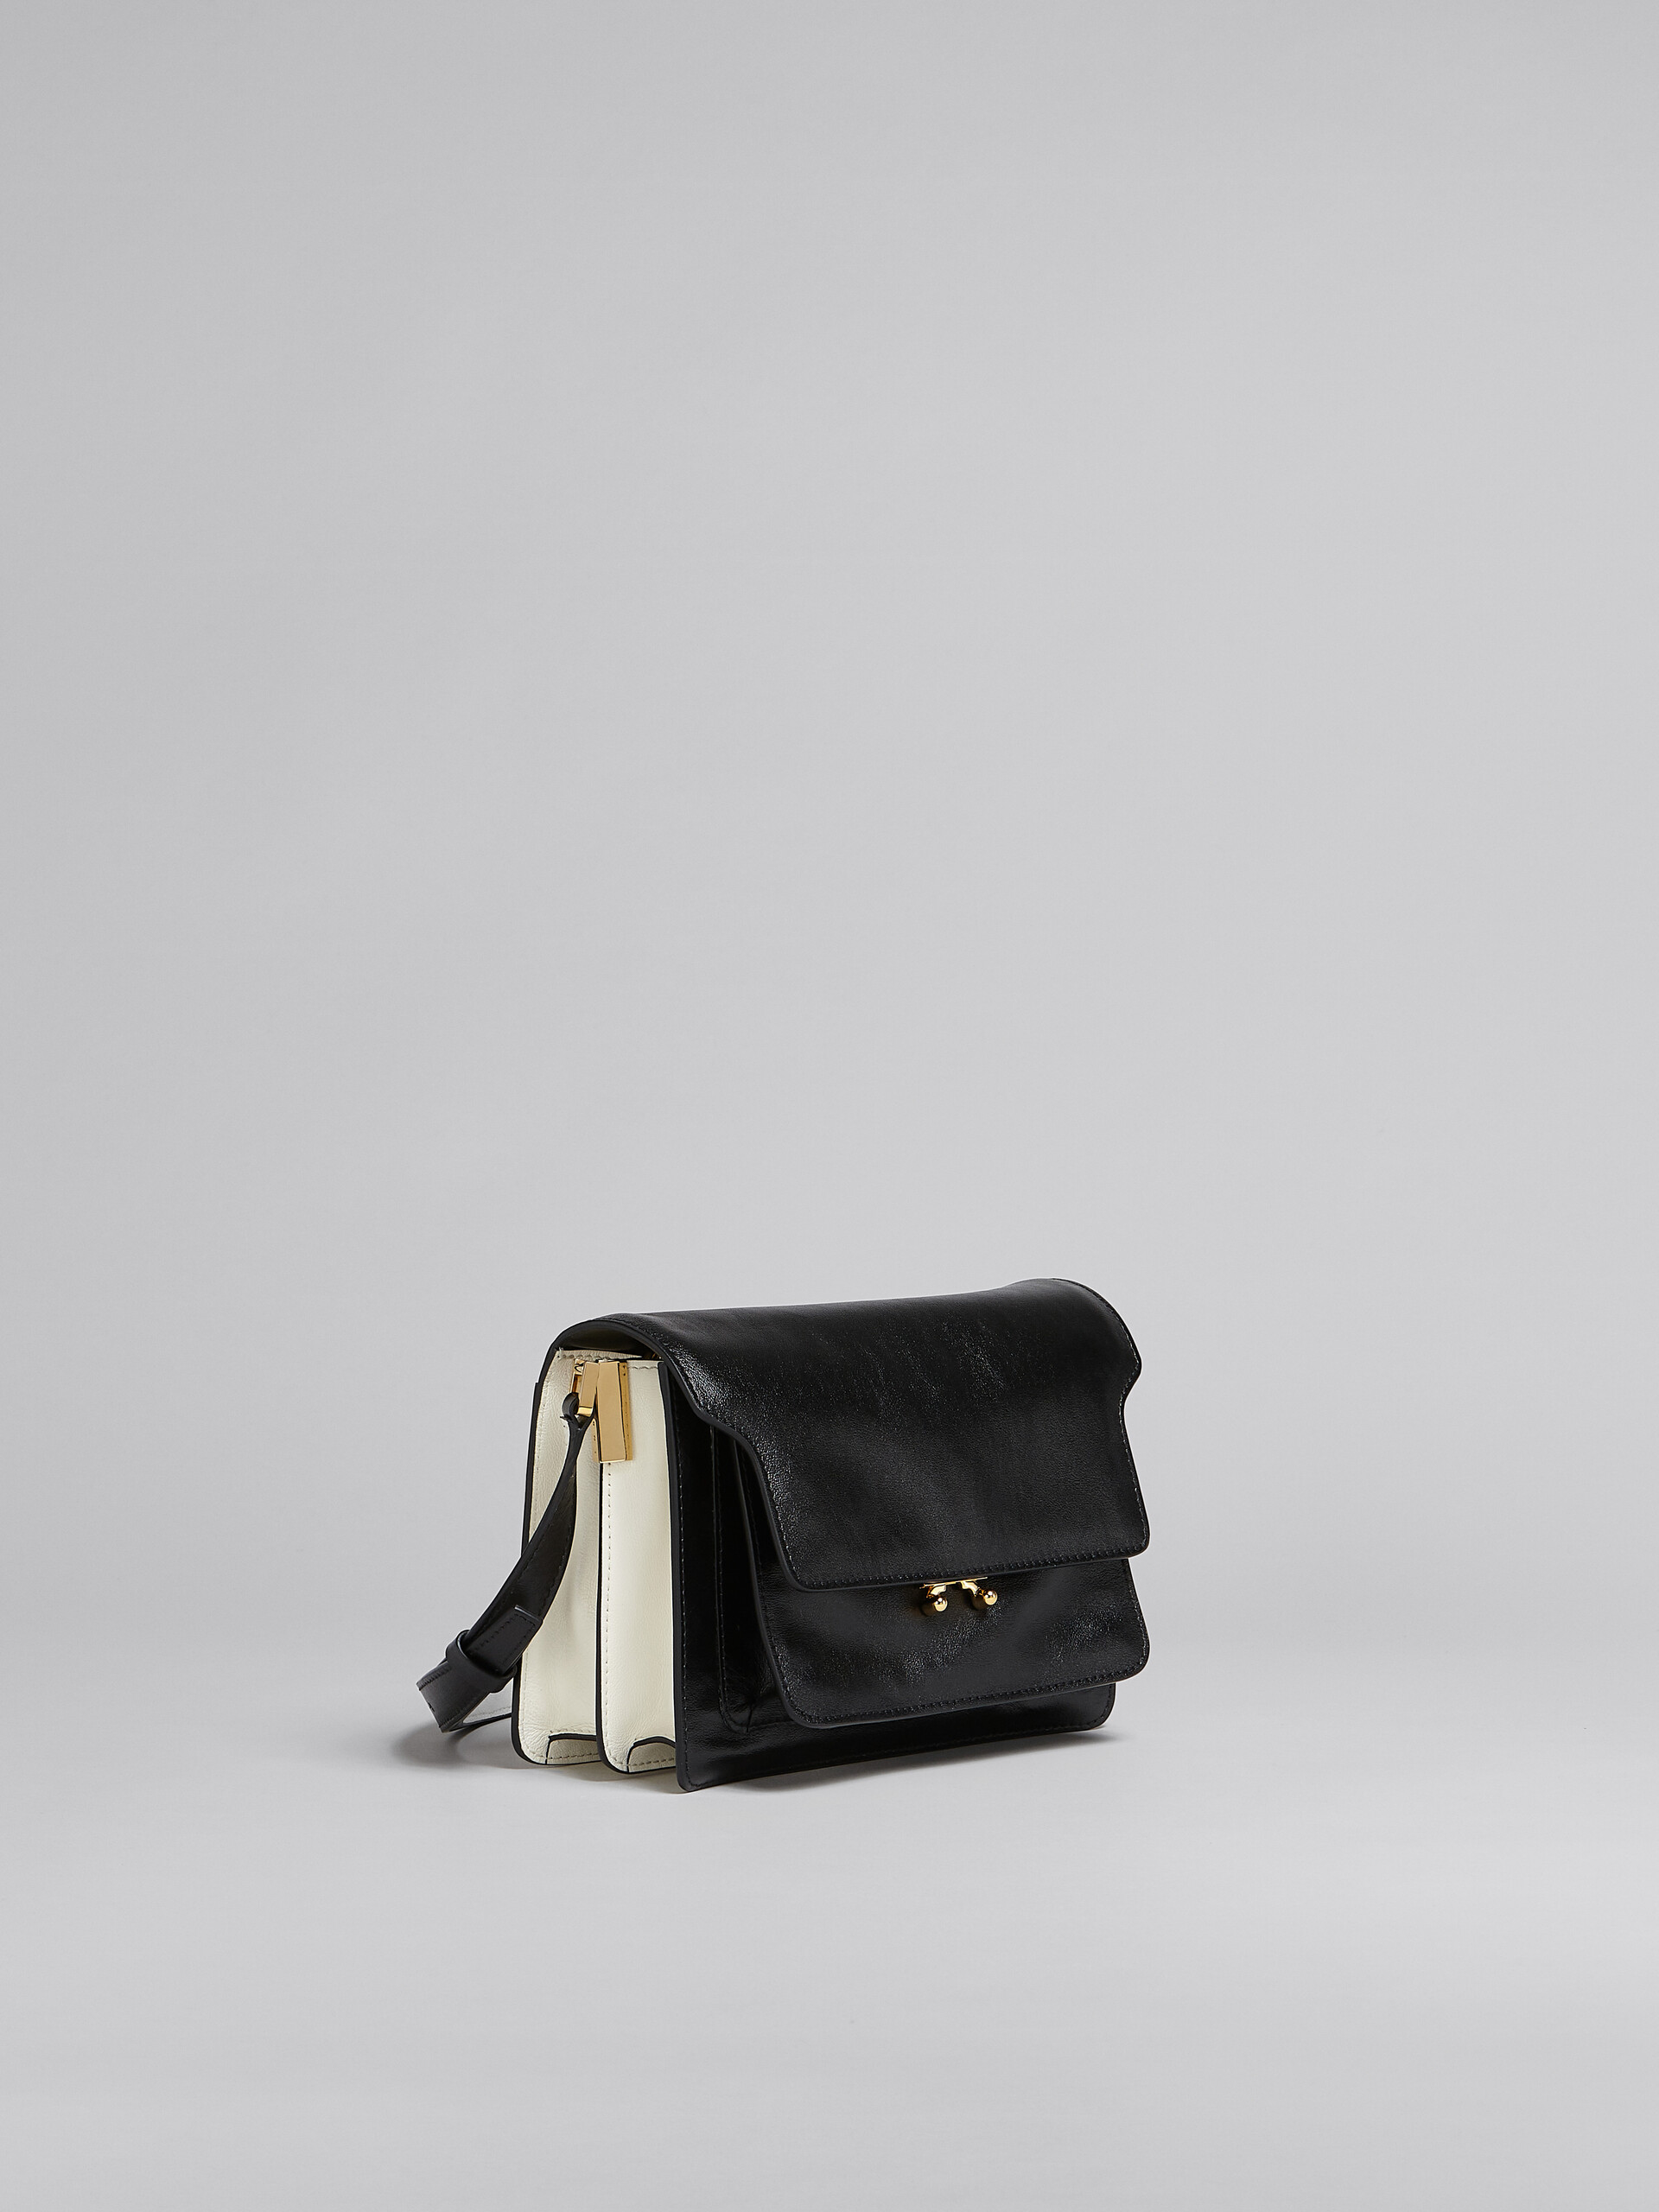 Trunk Soft Medium Bag in black and white leather - Shoulder Bag - Image 6